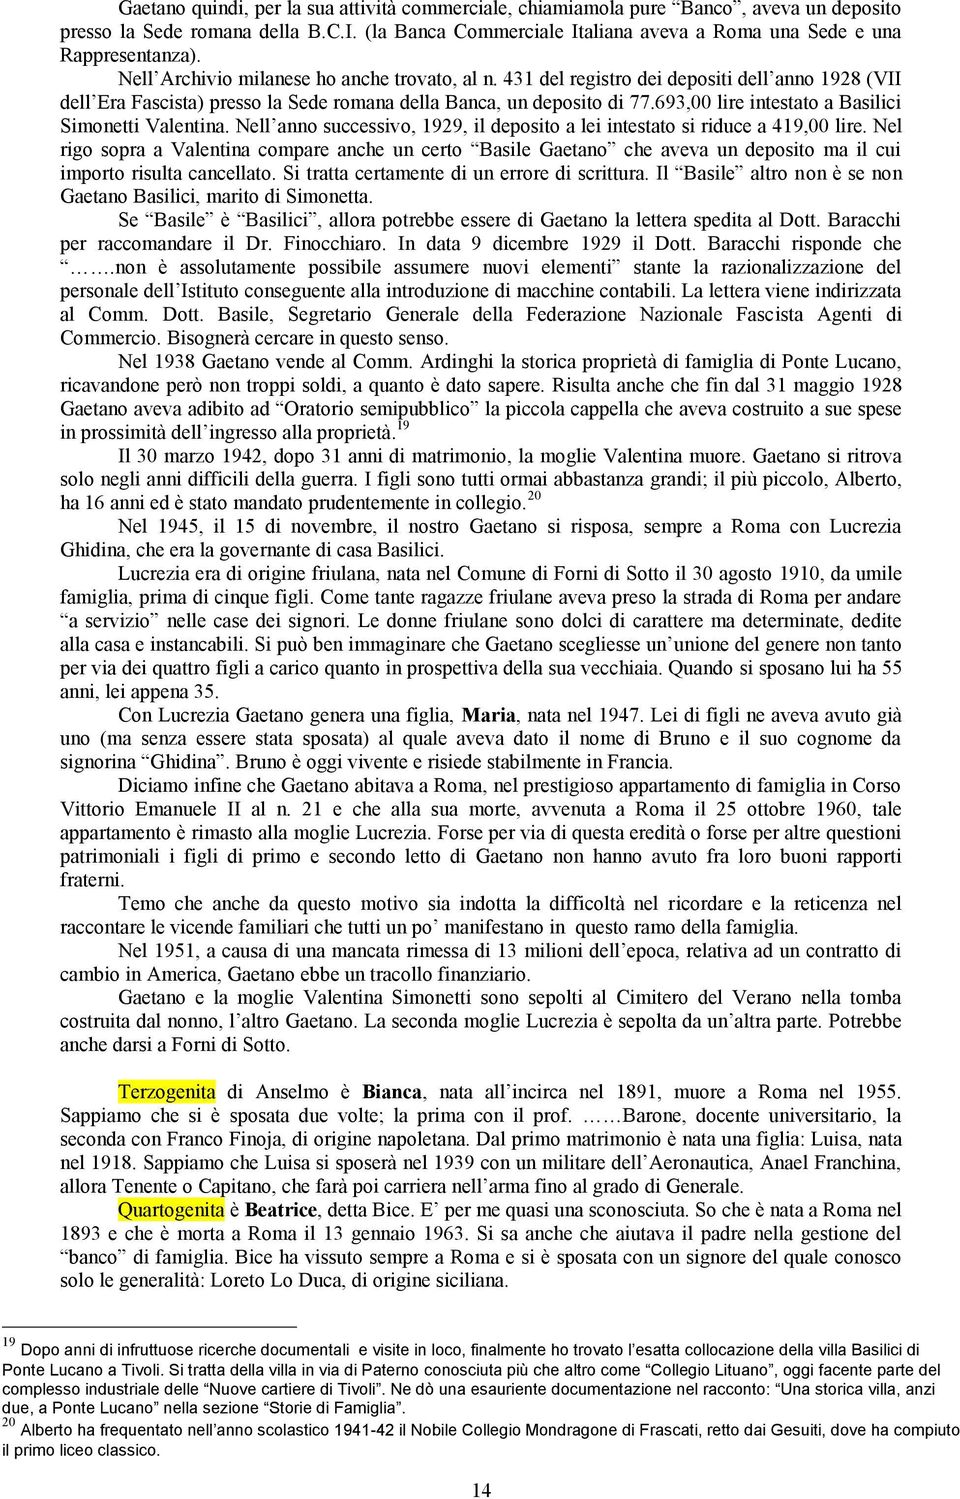 431 del registro dei depositi dell anno 1928 (VII dell Era Fascista) presso la Sede romana della Banca, un deposito di 77.693,00 lire intestato a Basilici Simonetti Valentina.